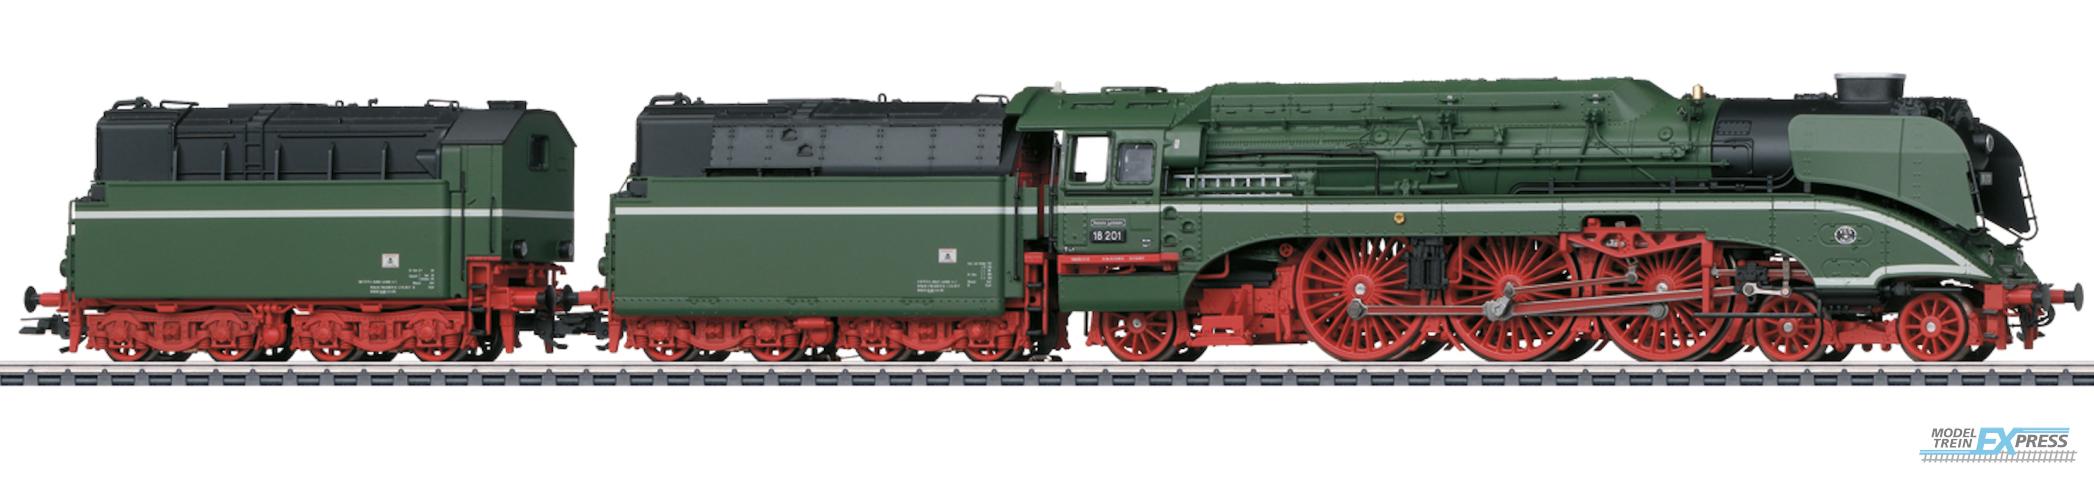 Marklin 38201 Dampflokomotive 18 201 'der gruene dampflokstar'